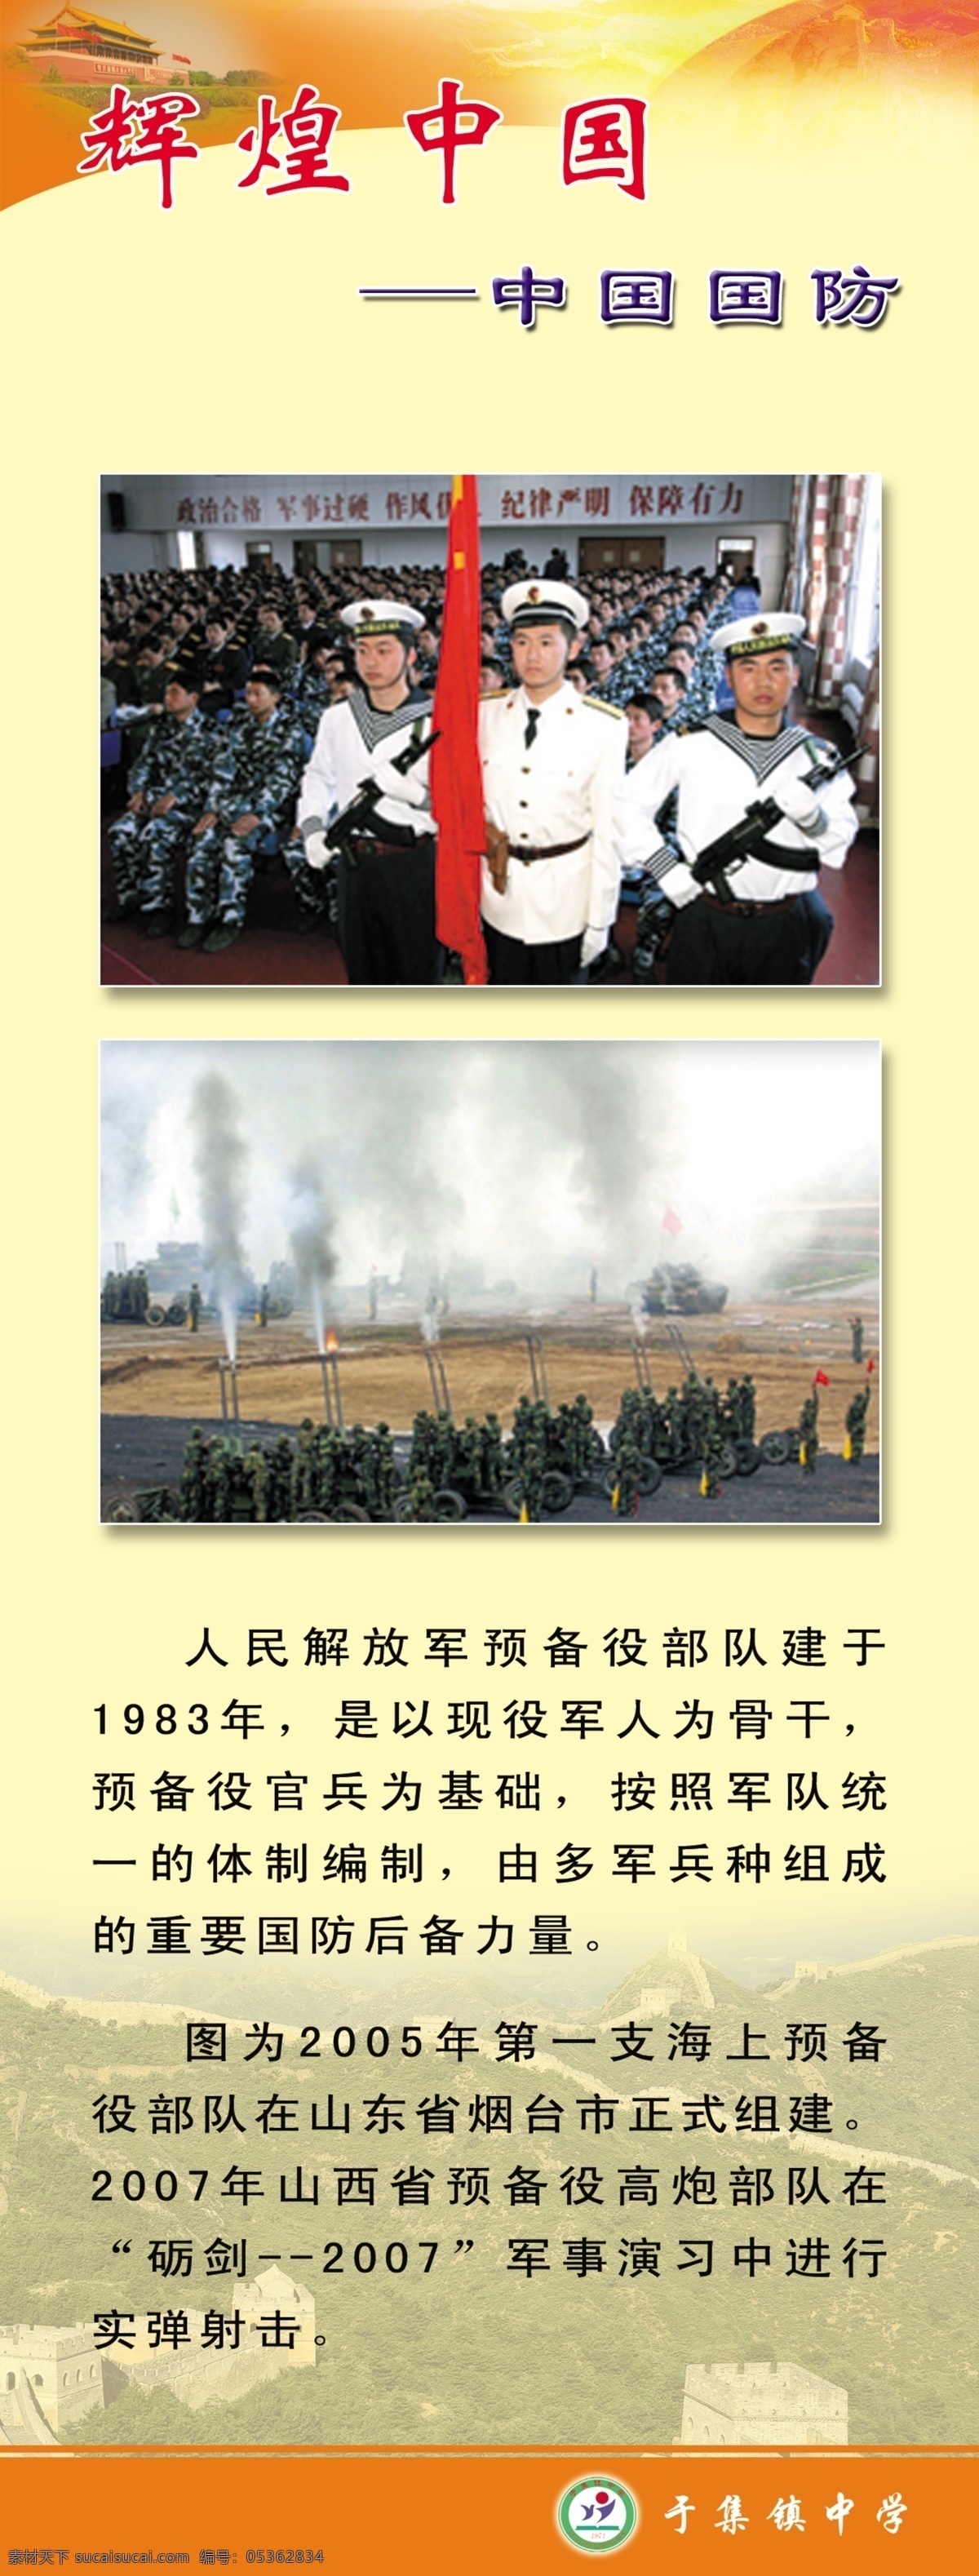 中国辉煌 中国 辉煌 国防 学校国防教育 国防教育 海军 学校类 展板模板 广告设计模板 源文件